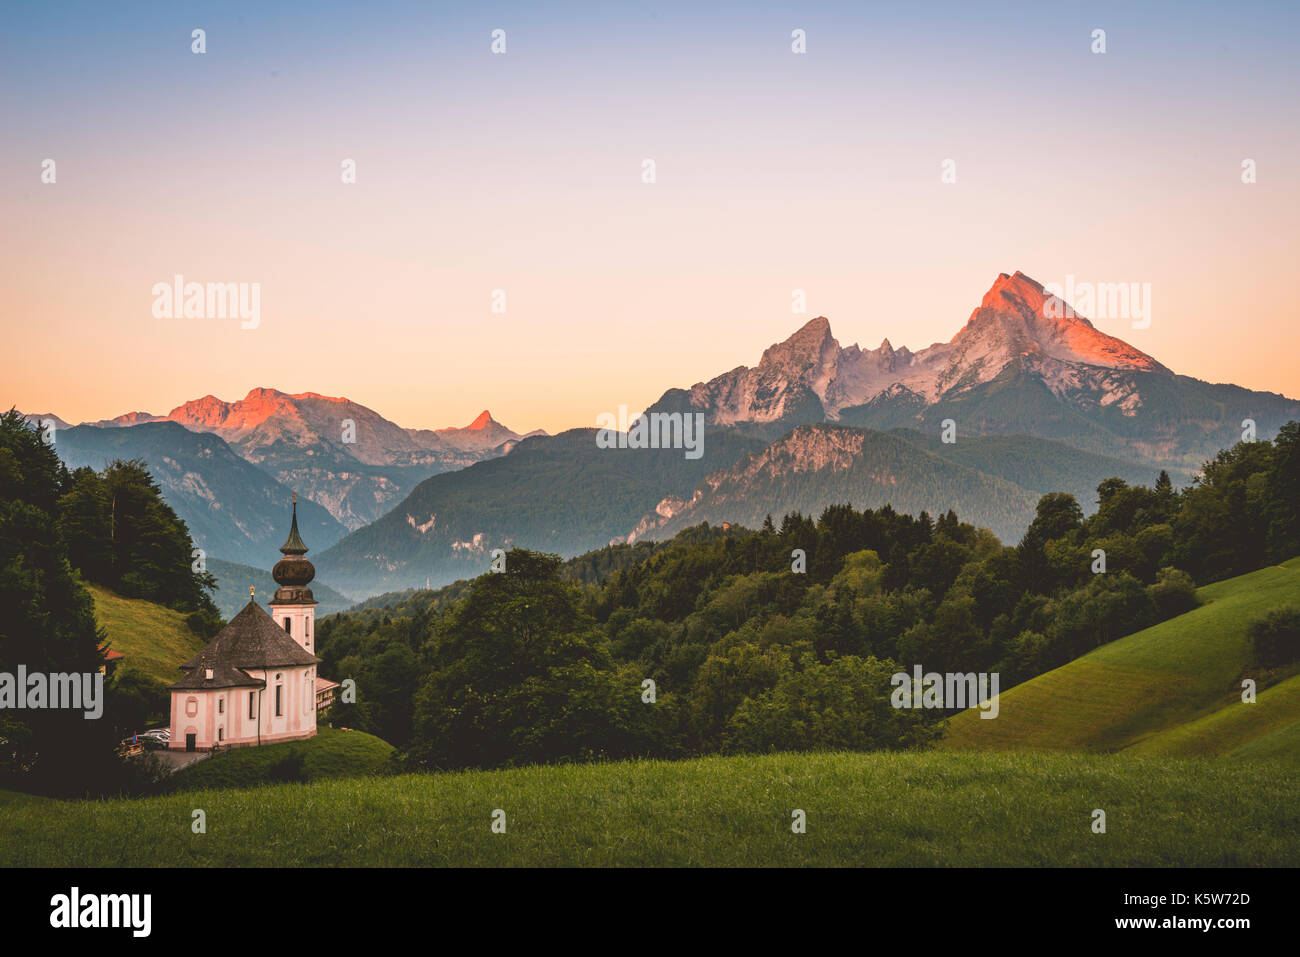 L'église de pèlerinage Maria gern, coucher de soleil vue montagne watzmann à partir de la vallée hochtal, Berchtesgaden berchtesgaden, alpes Banque D'Images